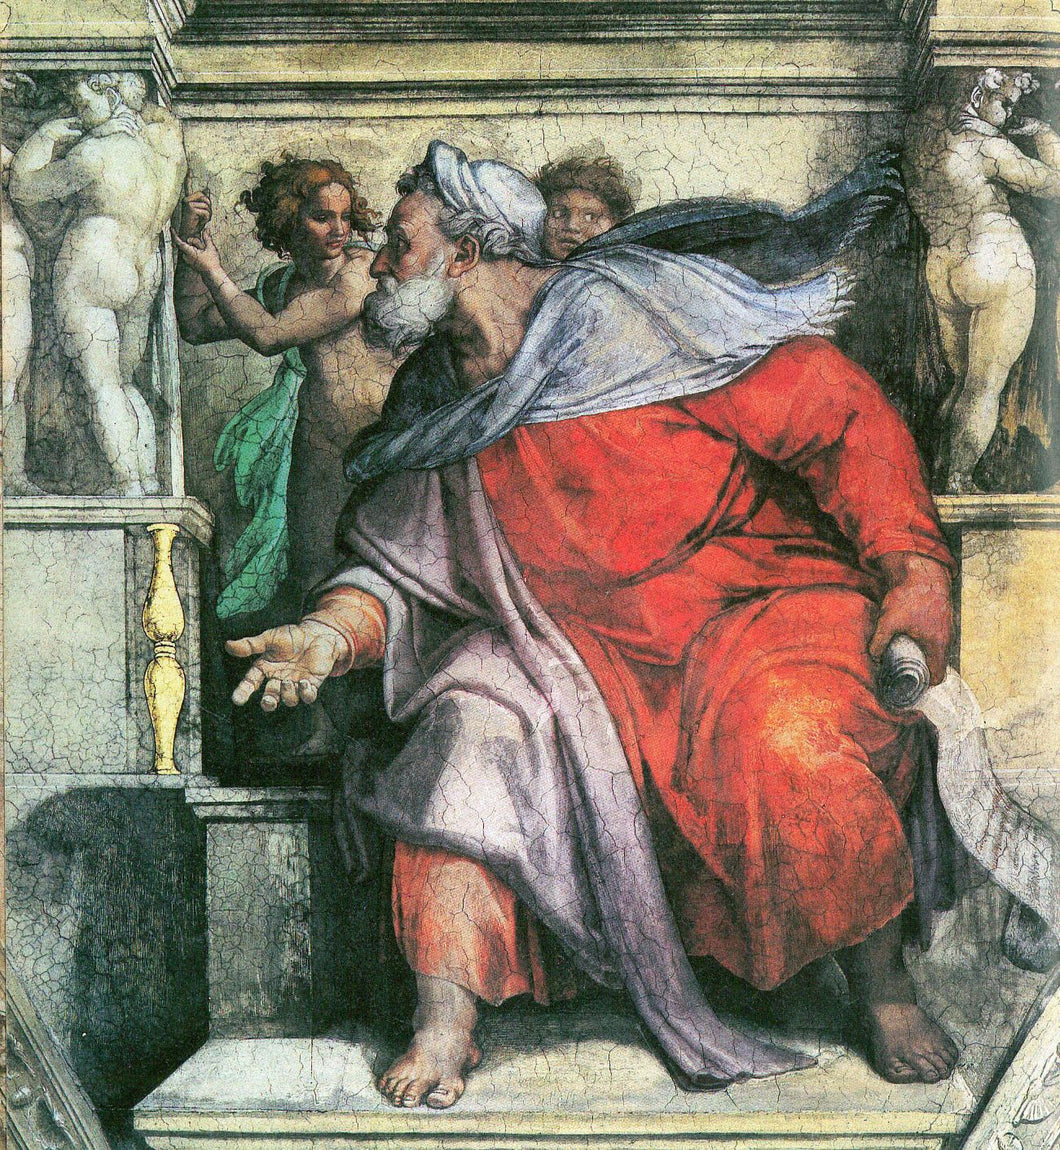 Michelanglo - The Prophet Ezekiel by Michelangelo